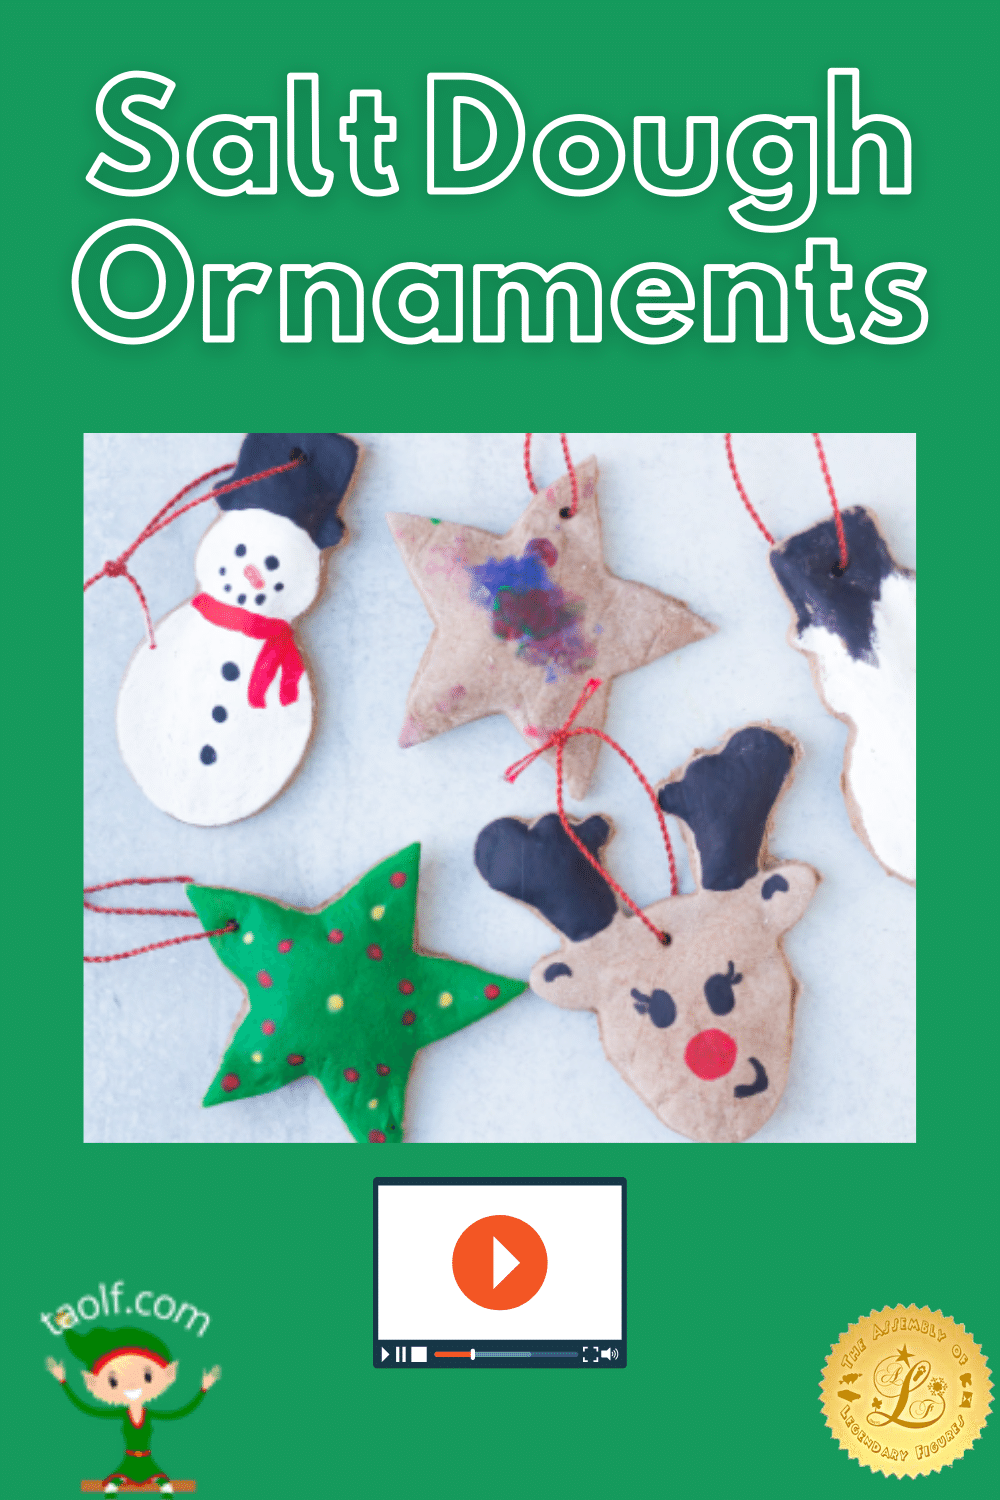 Creating Salt Dough Ornaments